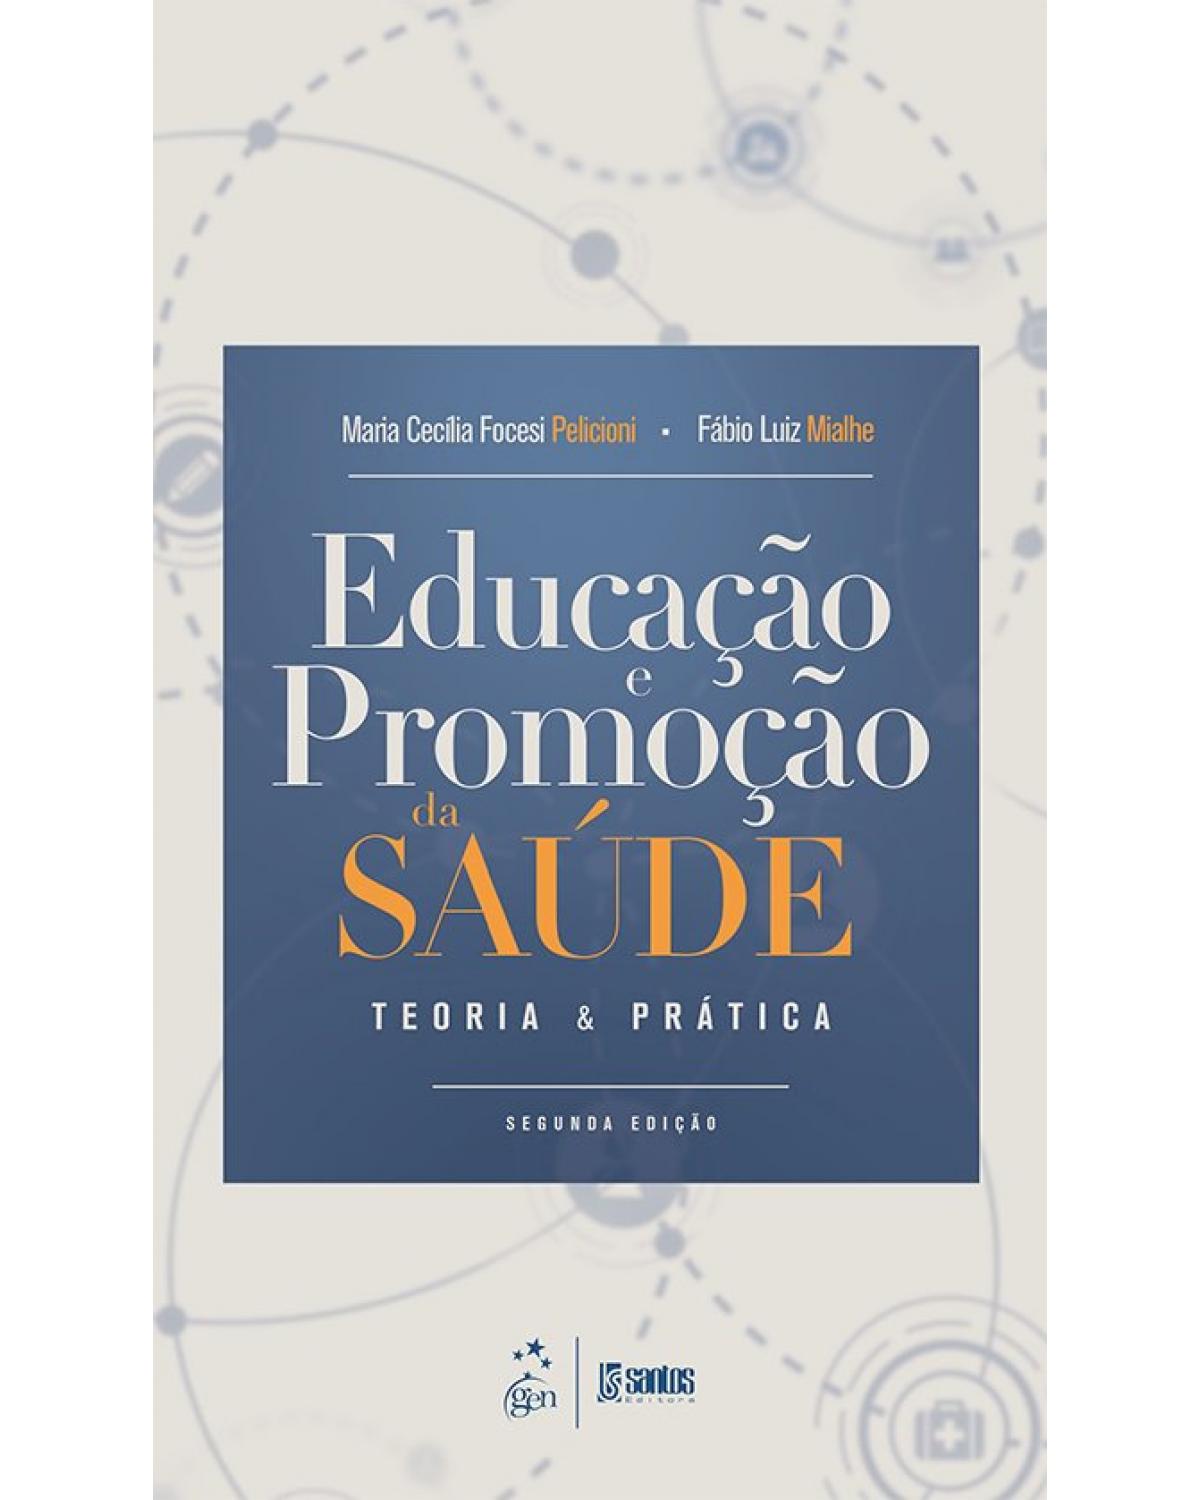 Educação e Promoção da Saúde - Teoria e Prática - teoria e prática - 2ª Edição | 2019